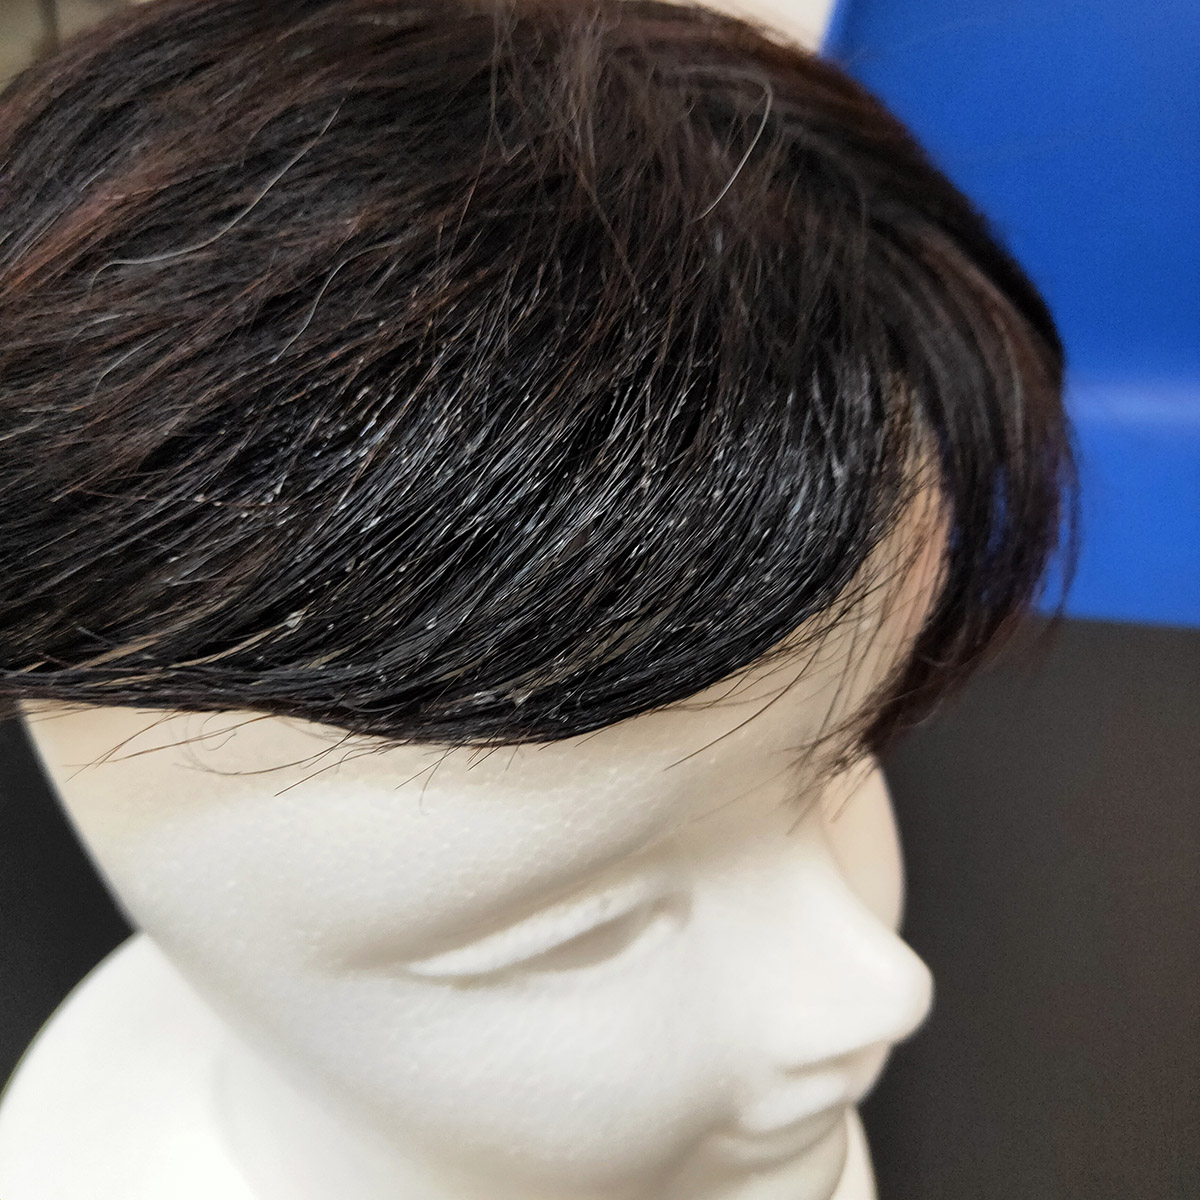 セット剤でついた白い粉を取る方法 Propiastyle プロピアスタイル 髪の悩みを新しい希望へ